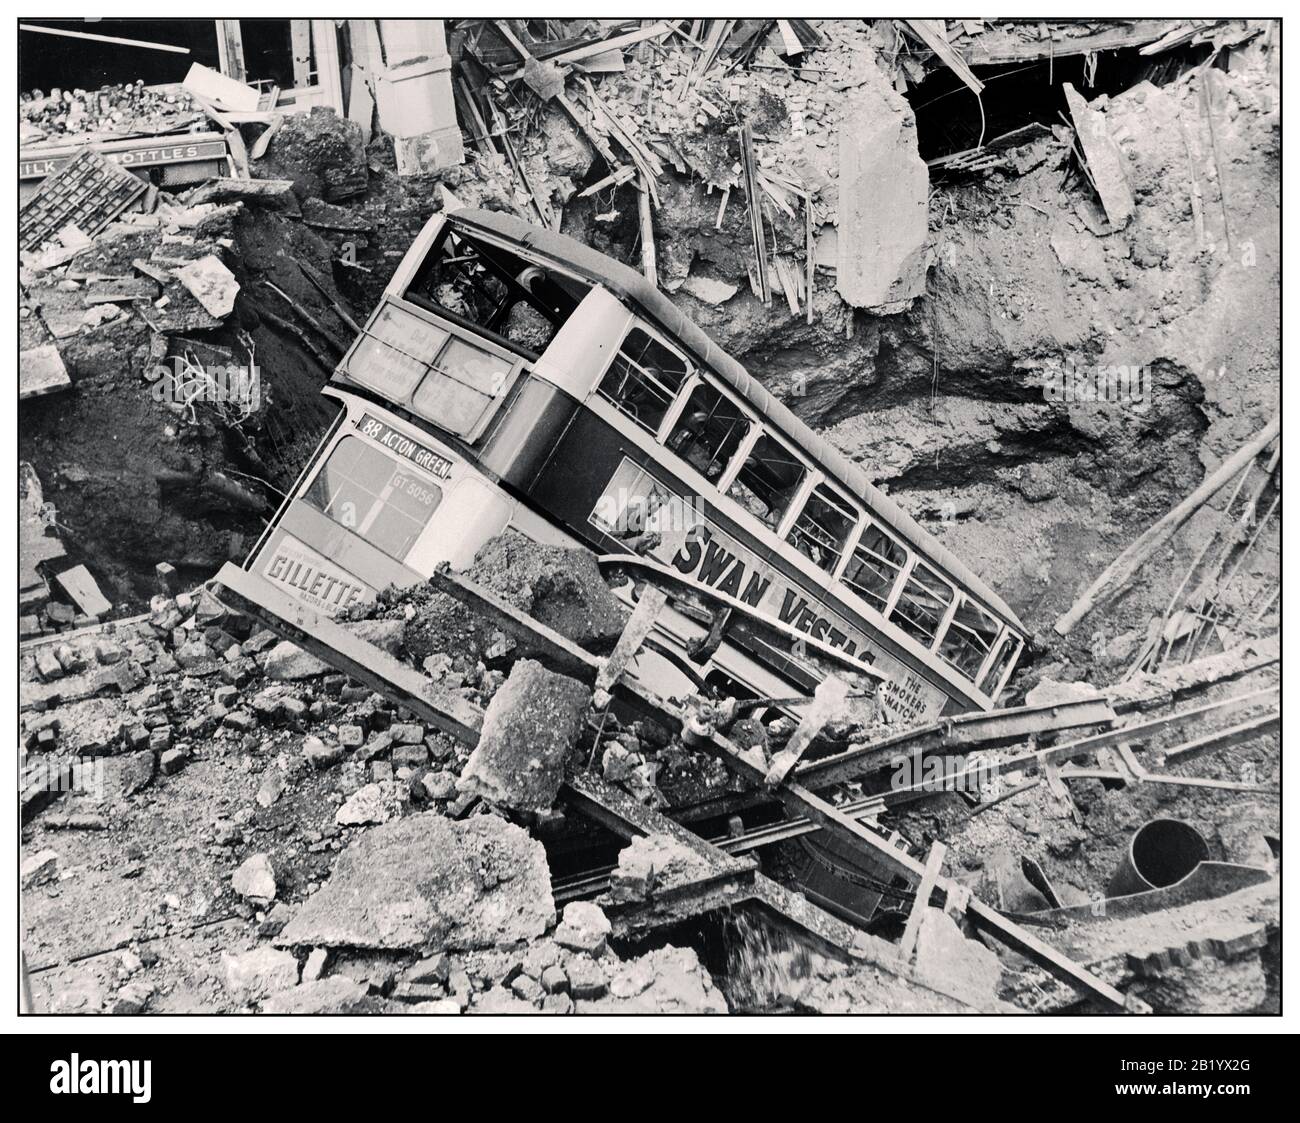 Il CRATERE DELLA BOMBA DEGLI AUTOBUS BLITZ DI LONDRA WW2 danni della bomba di RAID nazista degli anni 40 in Gran Bretagna durante la seconda guerra mondiale dopo un bombardamento, un autobus di Londra si trova in un cratere della bomba a Balham, nel sud di Londra. Seconda guerra mondiale Foto Stock